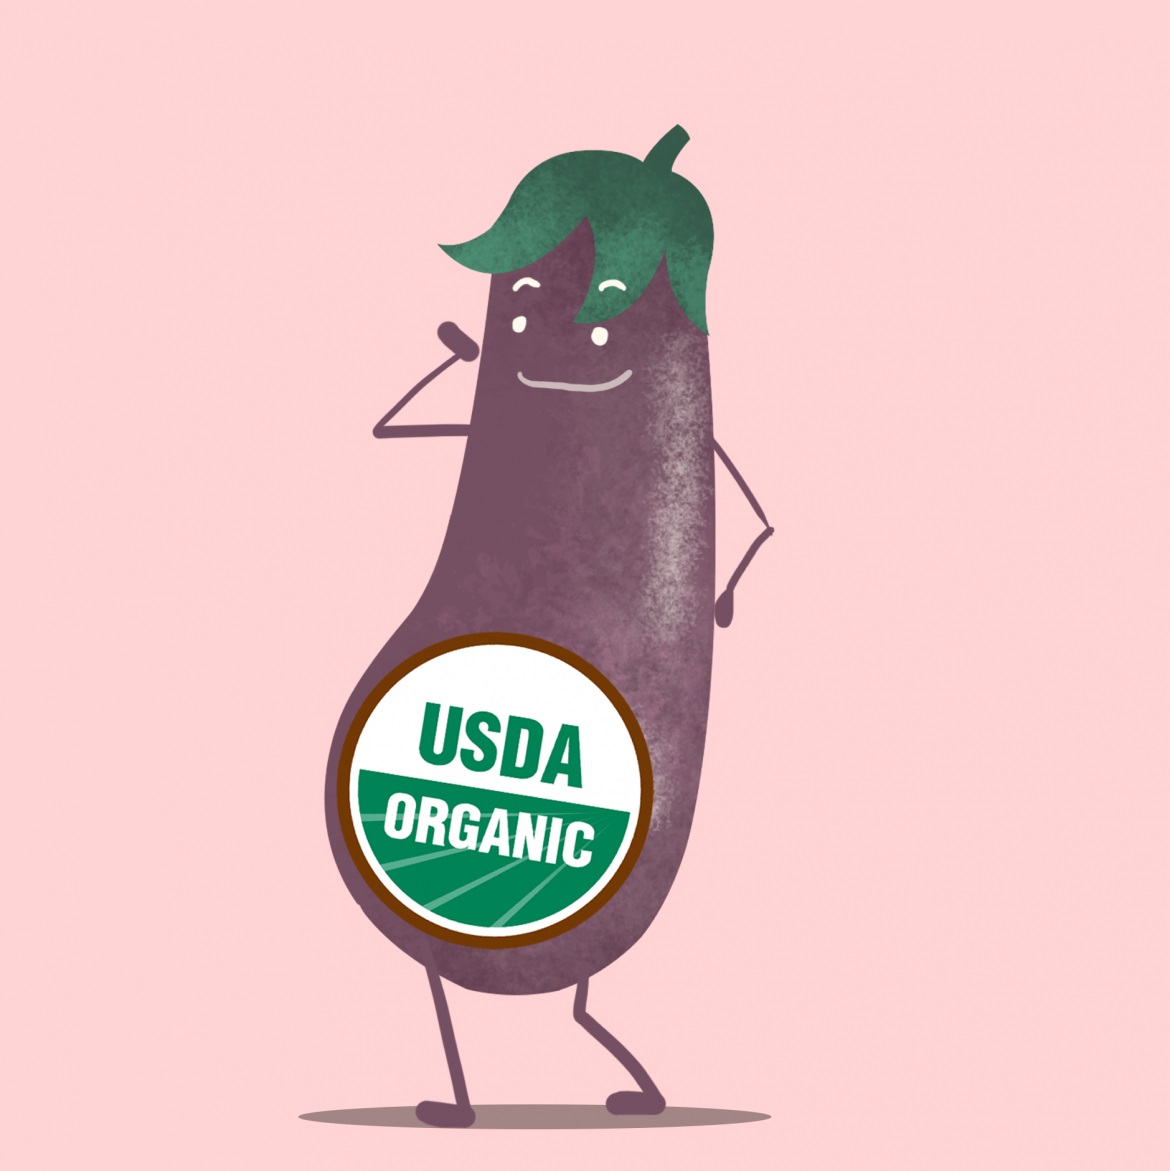 Chứng nhận USDA được coi như “bằng Harvard của rau"